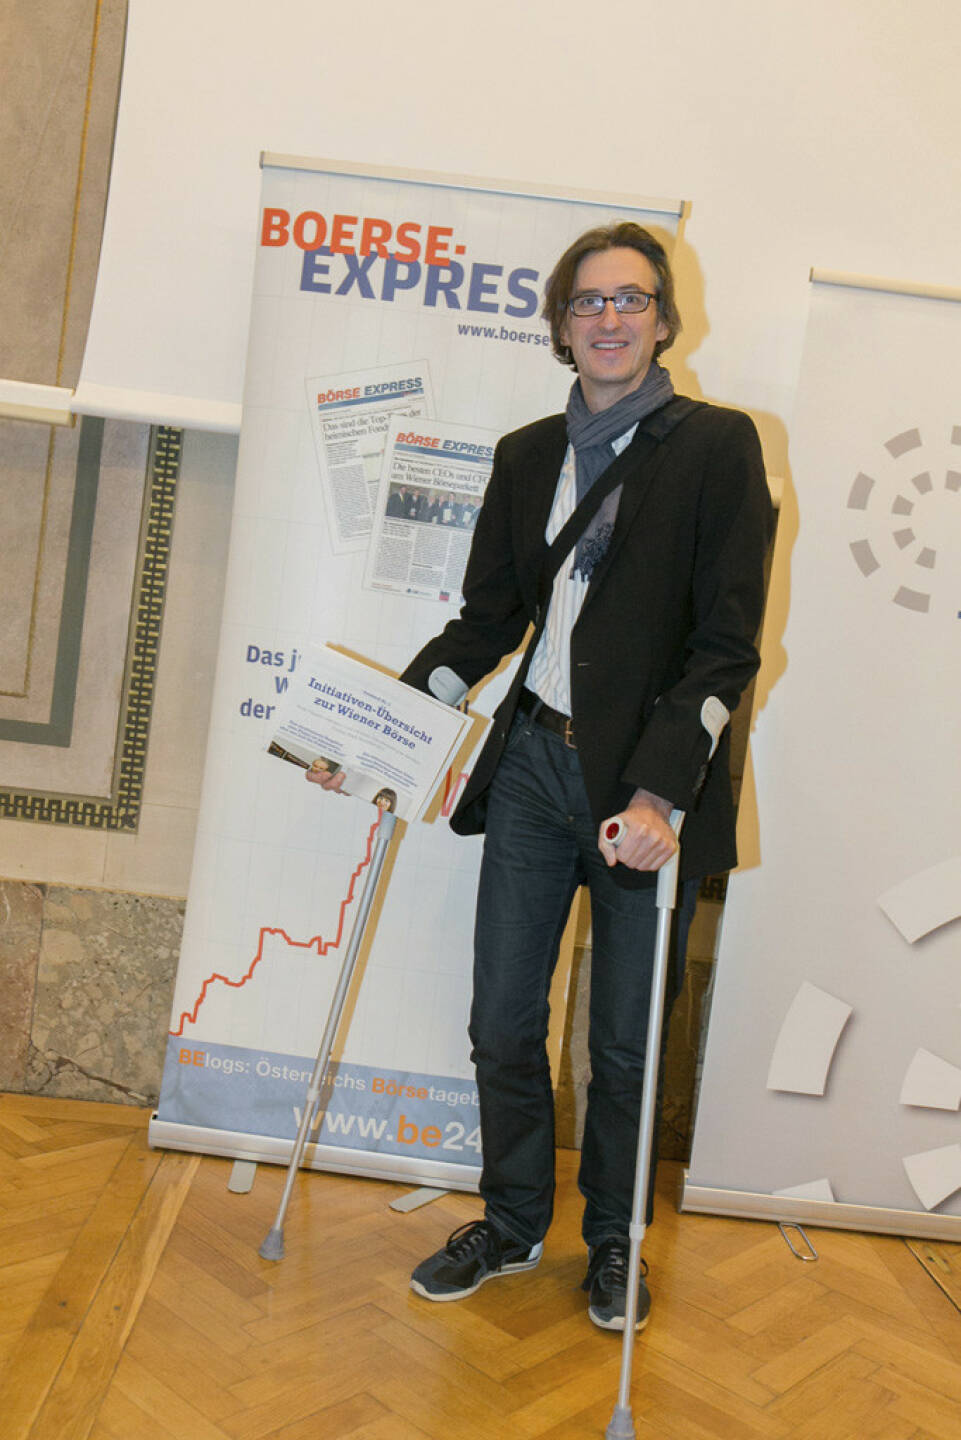 Josef Chladek als gekrückt mit Fachheft für http://www.boerse-express.com/roadshow